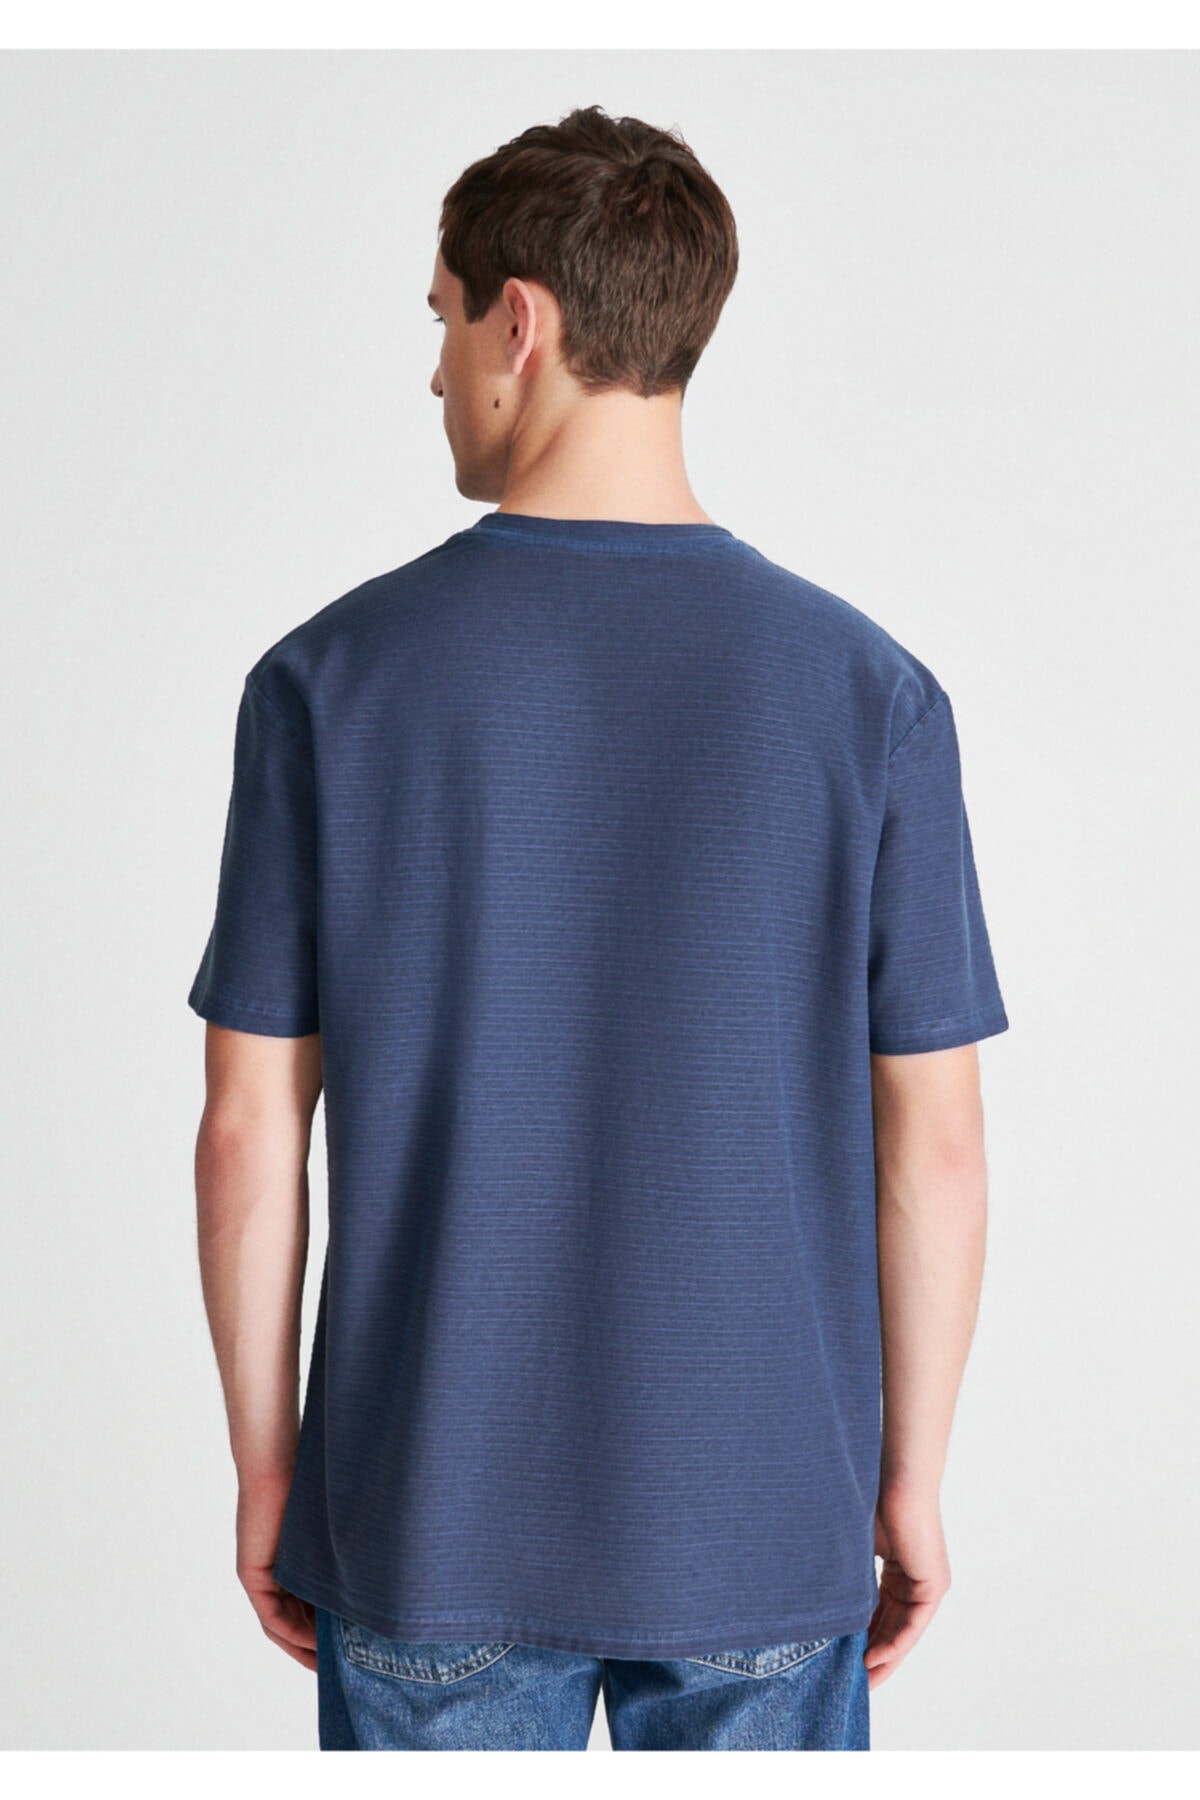 Mavi Jeans Erkek T-Shirt 0610082-70490 